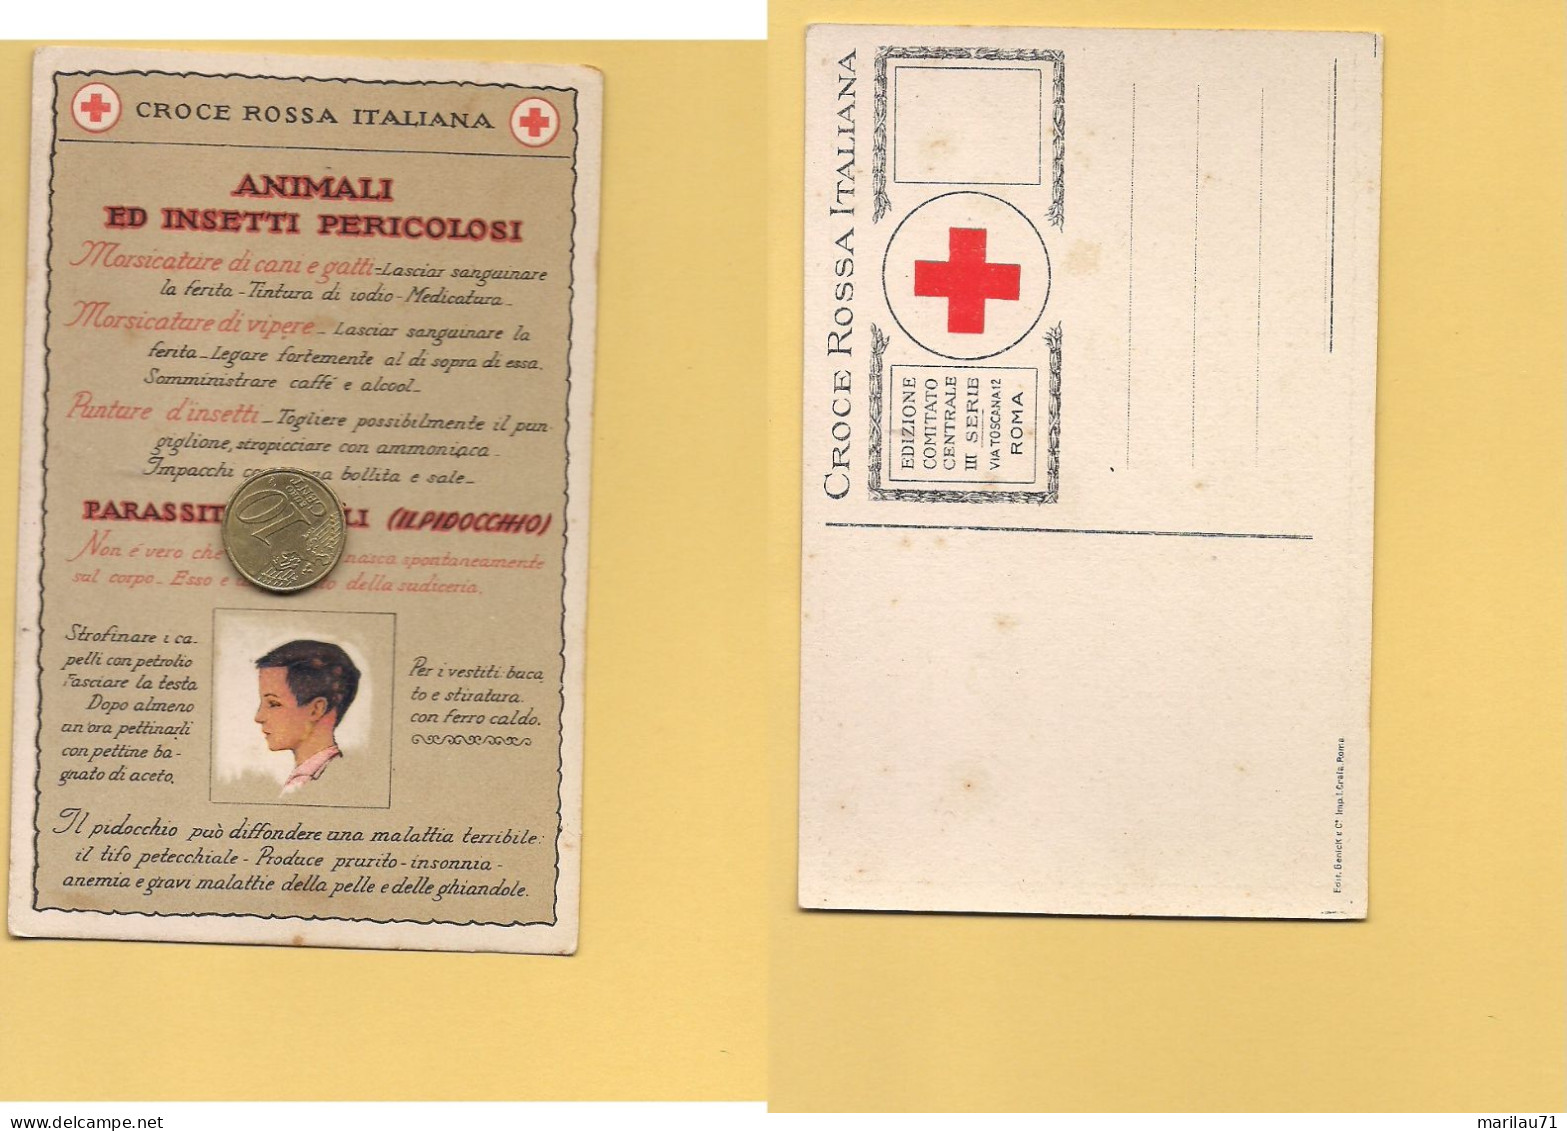 P3574 CROCE ROSSA ITALIANA III SERIE ANIMALI ED INSETTI PERICOLOSI ANNI '30 - Croce Rossa